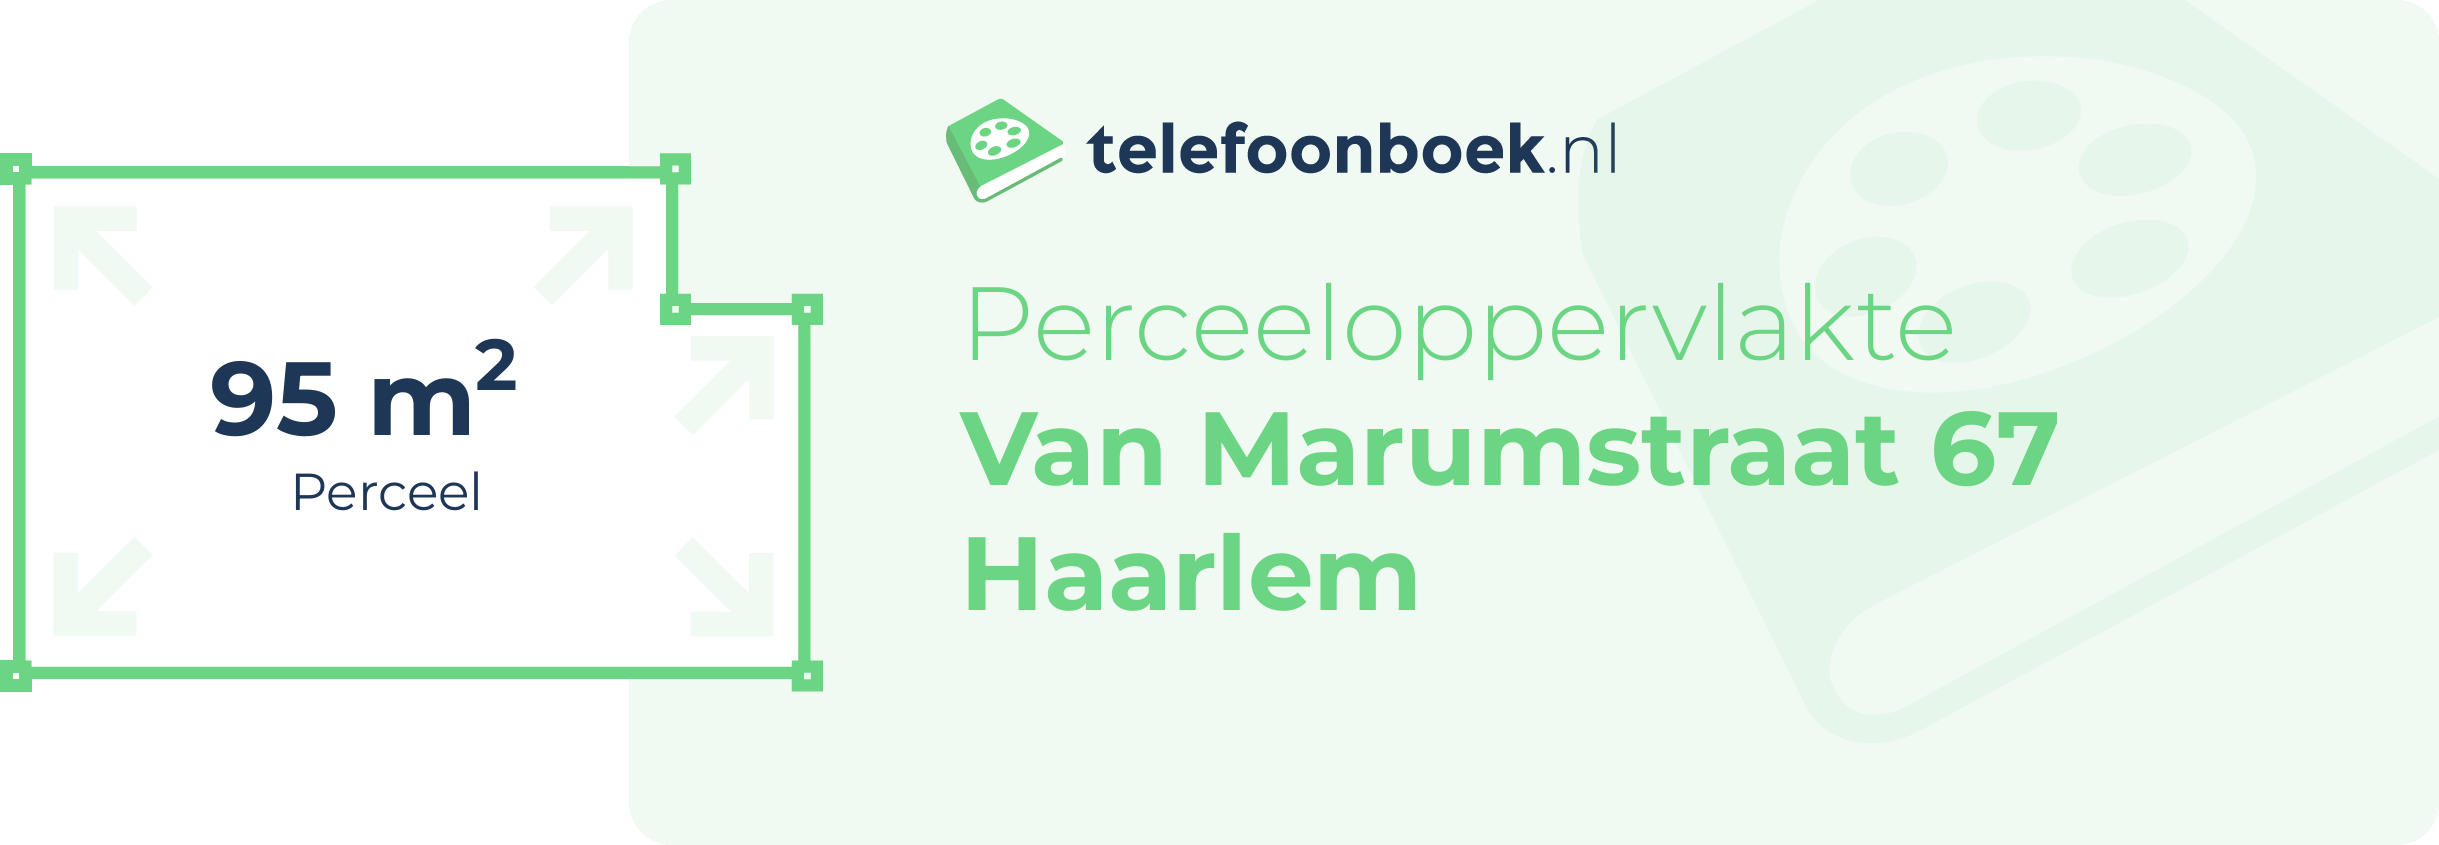 Perceeloppervlakte Van Marumstraat 67 Haarlem